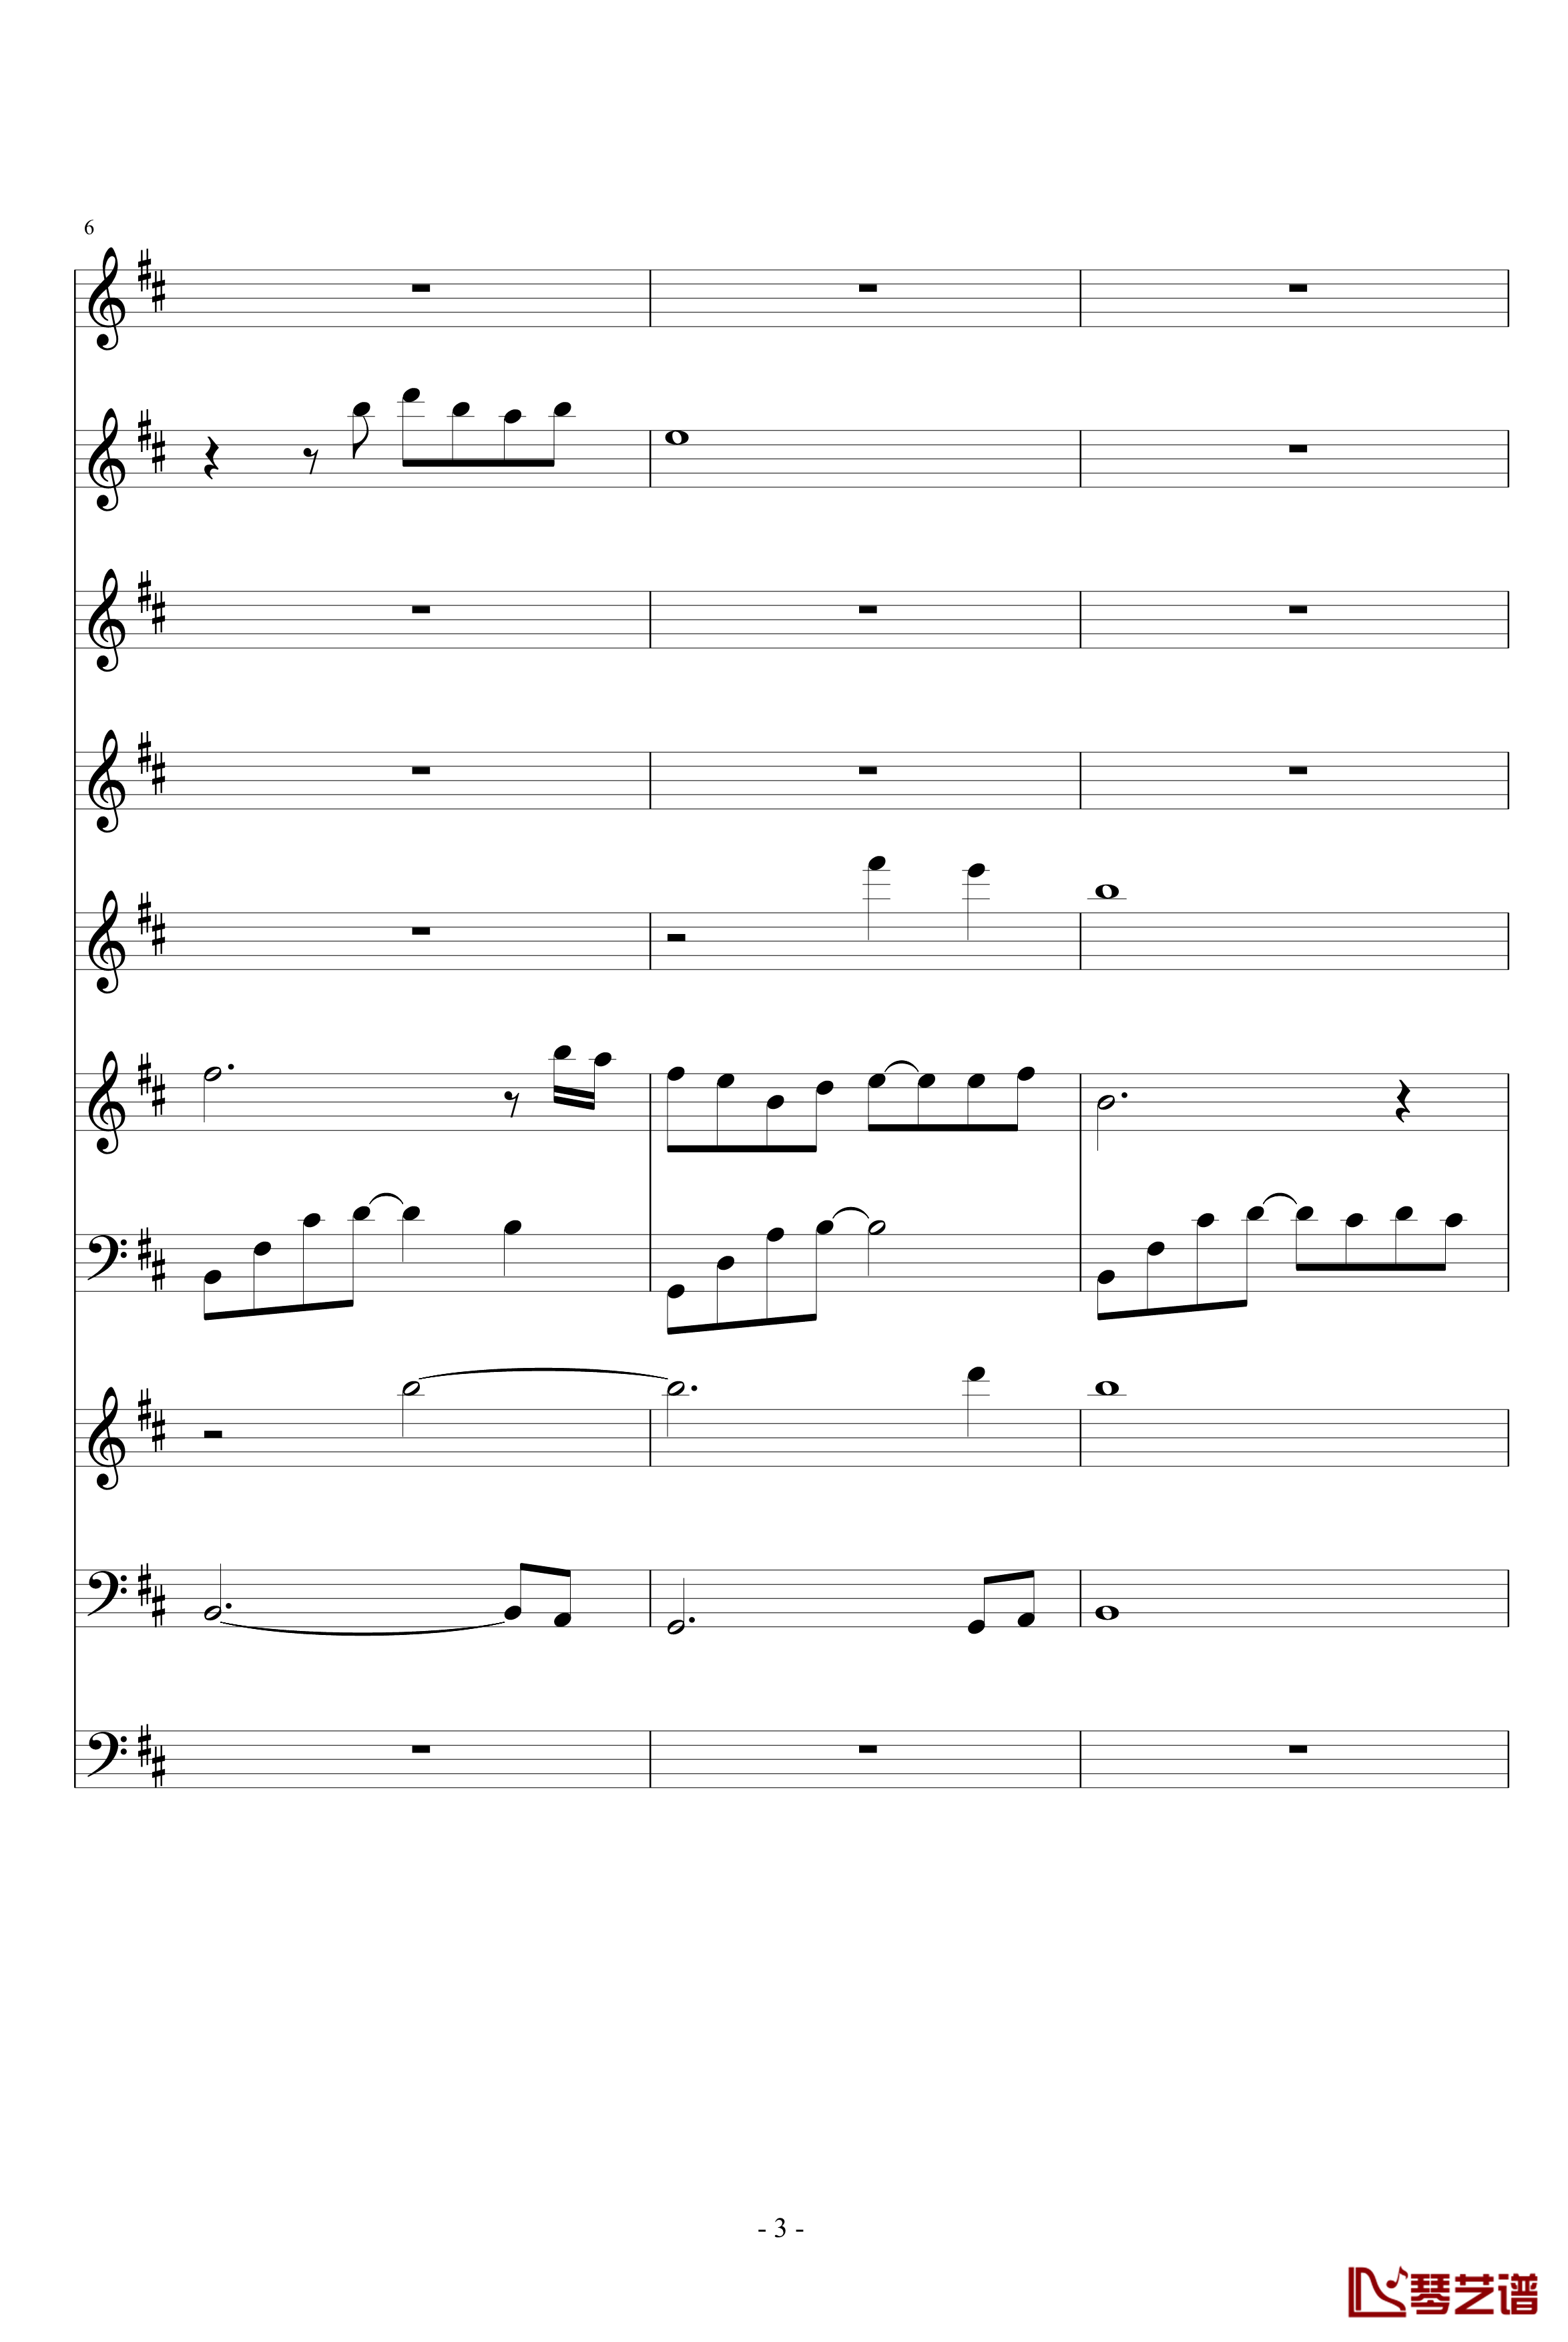 月落暗香坡钢琴谱-巴乌、笛子、琵琶、二胡、古筝-peterkingily3